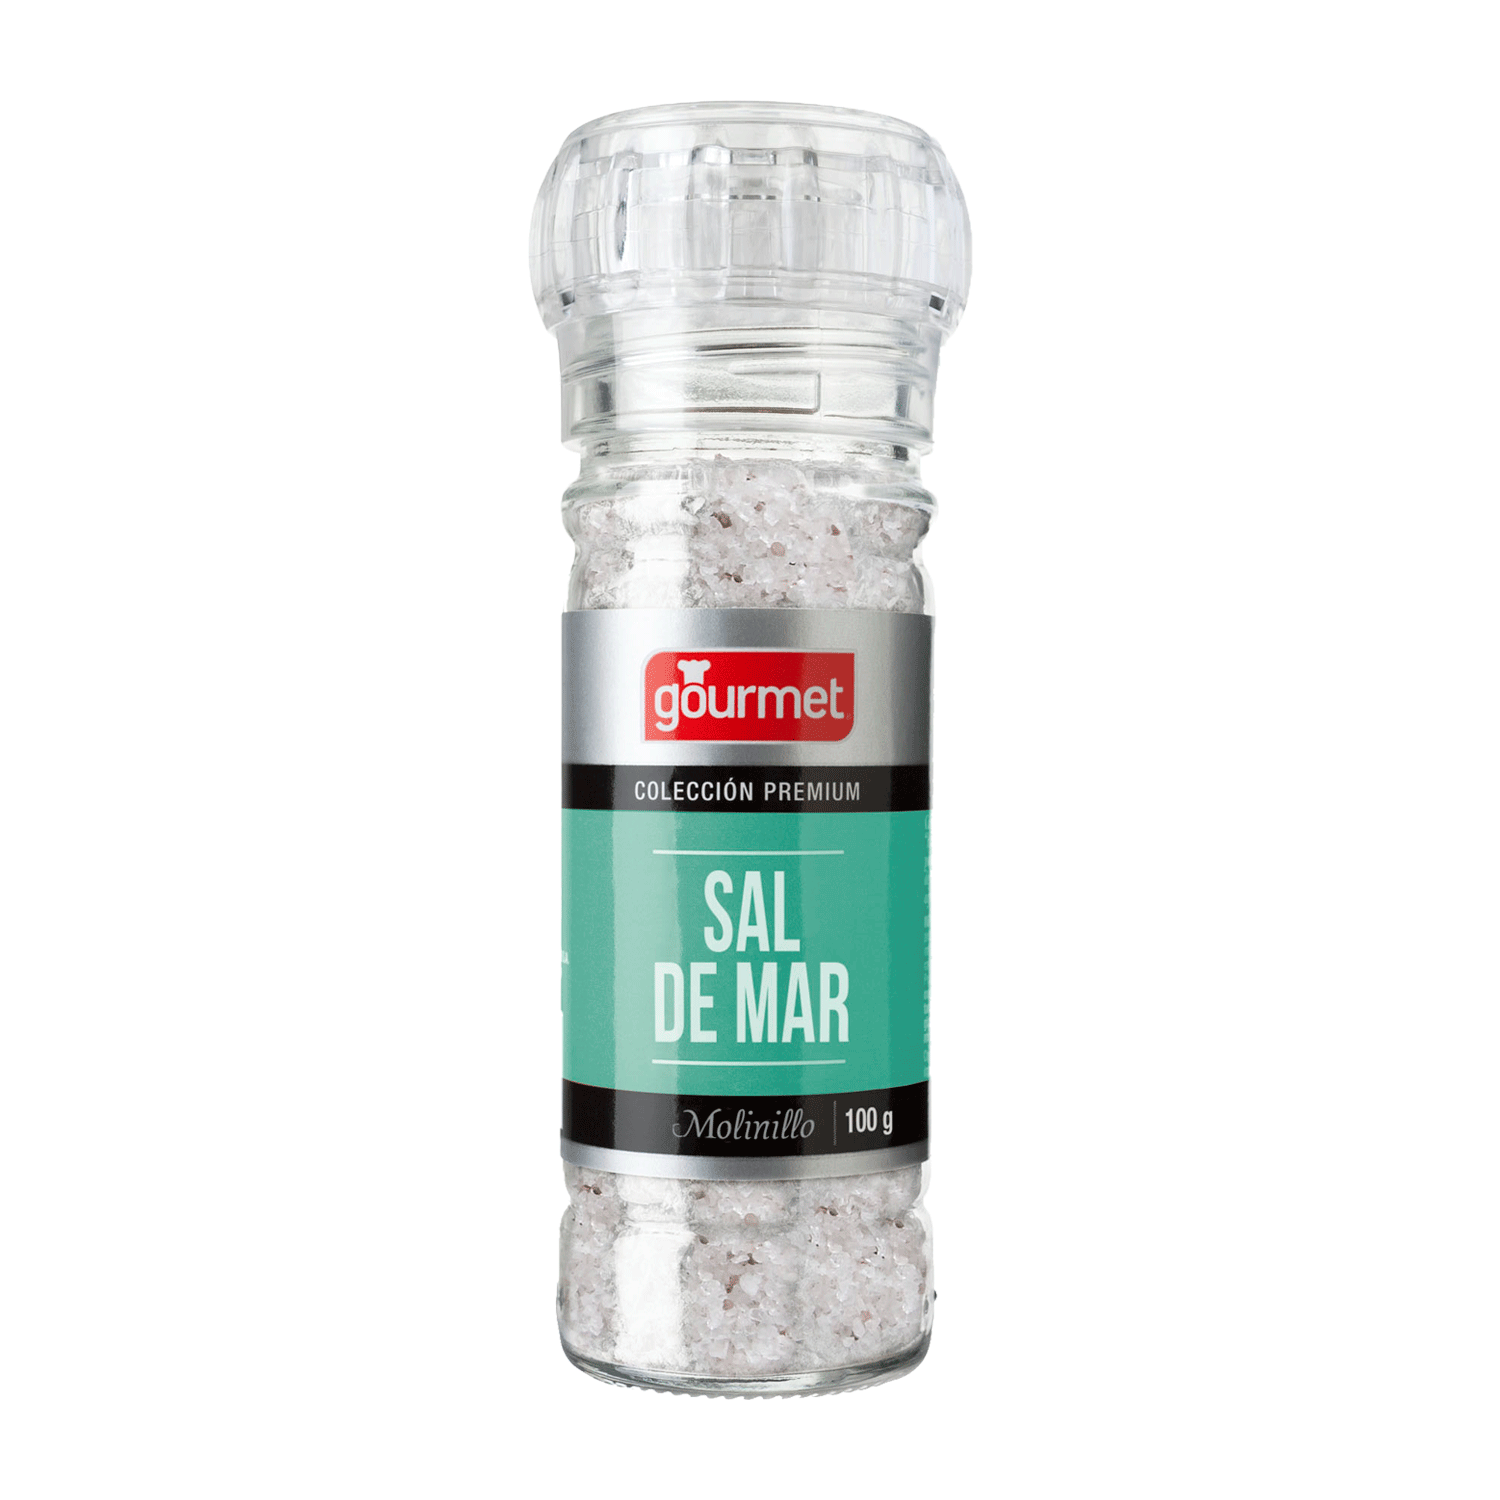 Encuentra la mejor sal 🧂 en @jumbochile 🐘 Ya sea uno de nuestros  molinillos de sal o nuestros prácticos doypacks 🤩 #sal #himalaya #gourmet  #jumbo #pyme